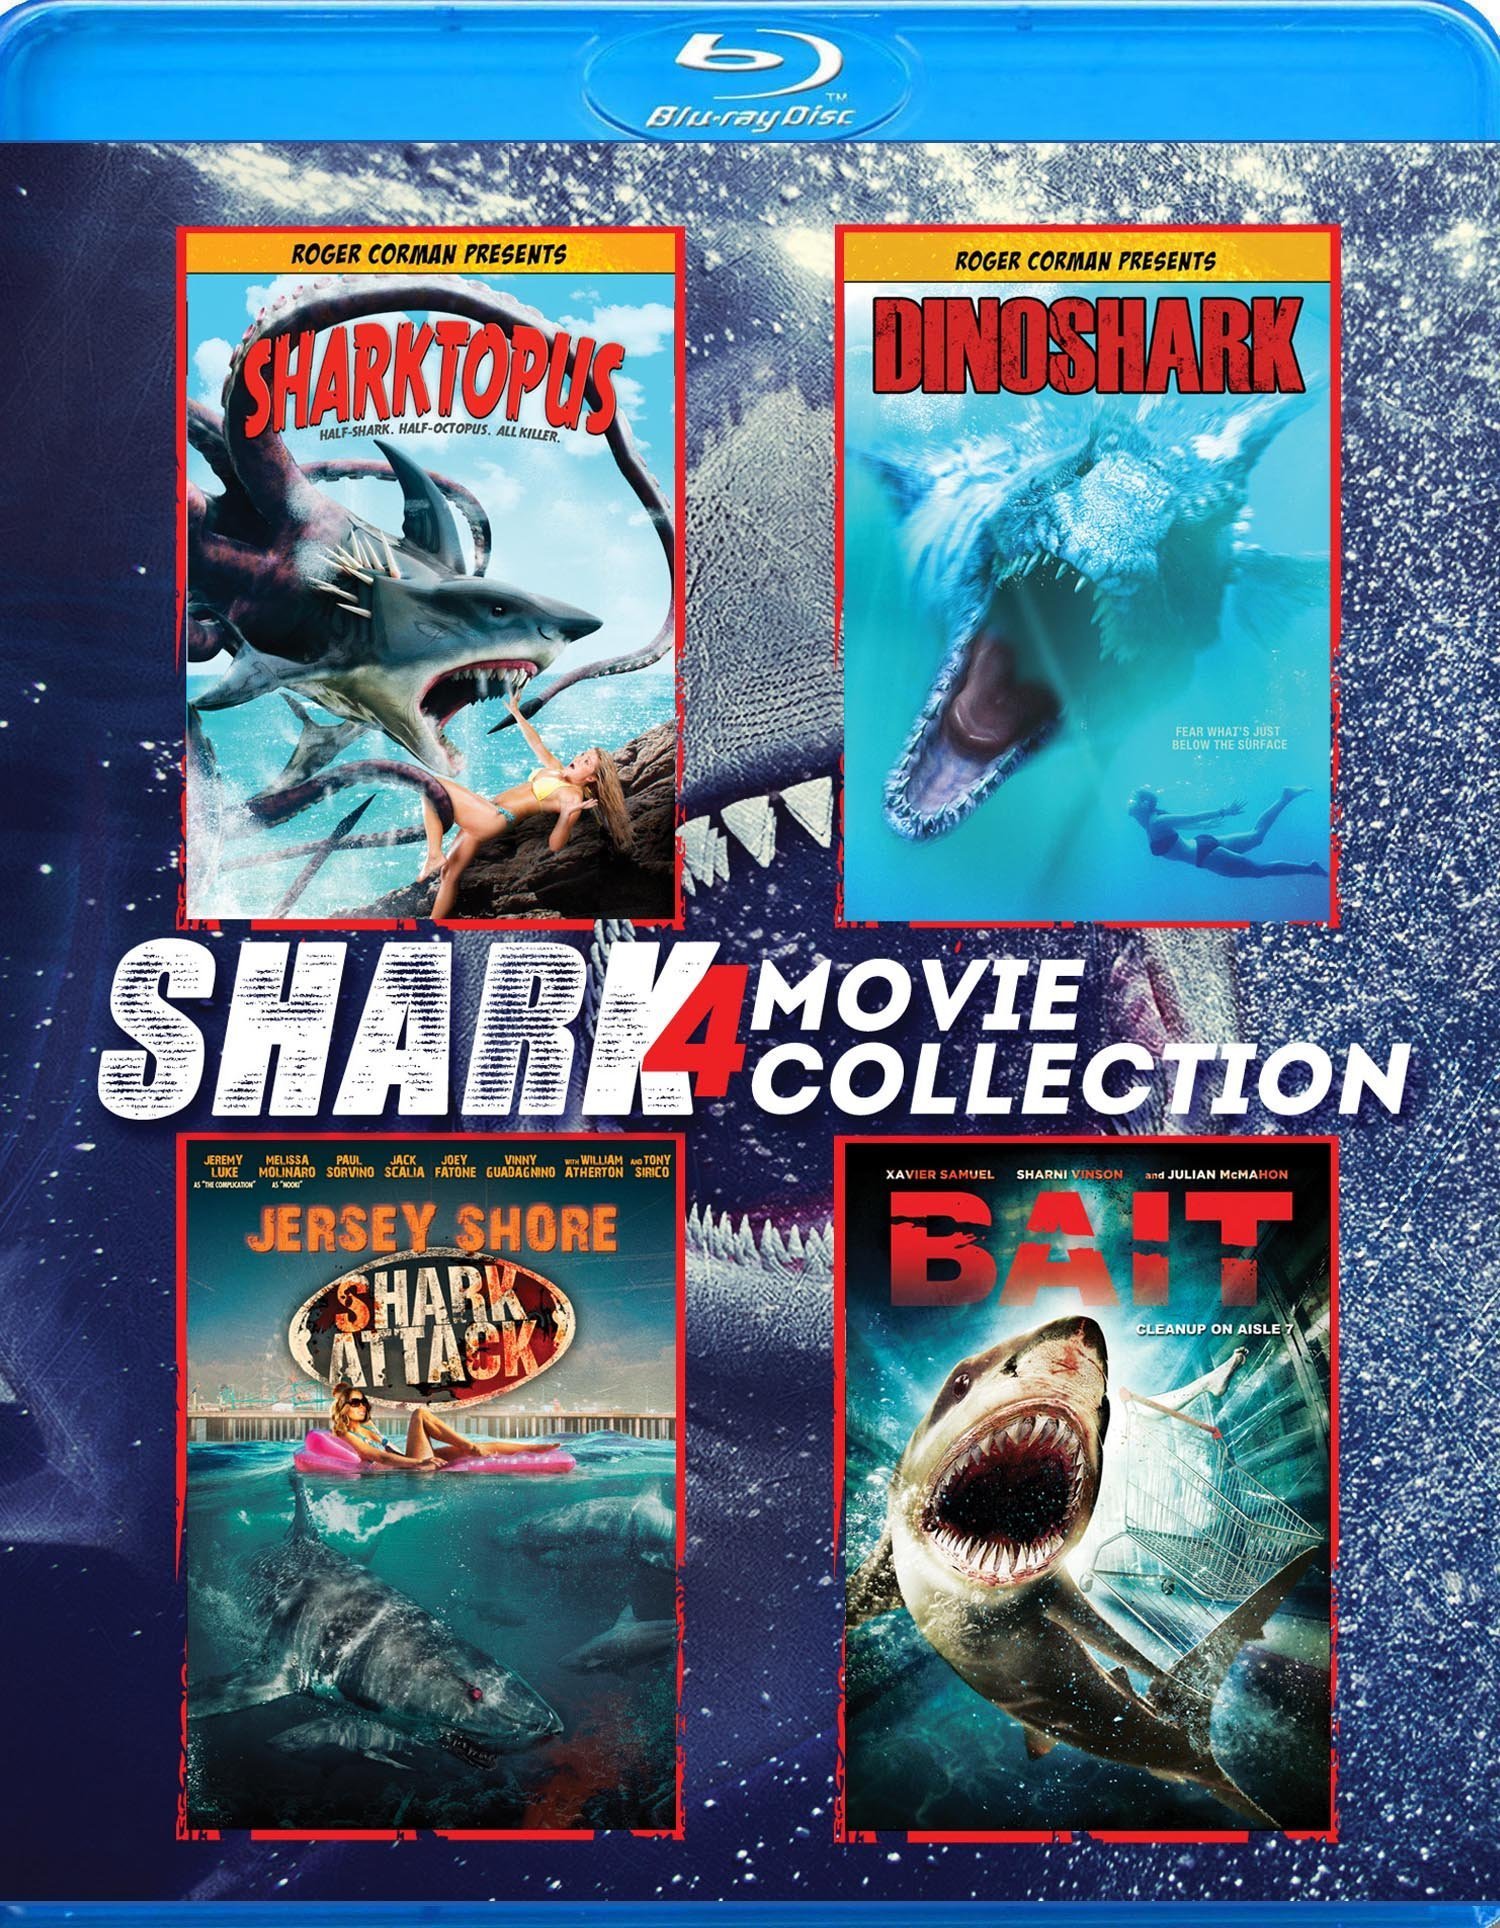 Shark 4 Movie Collection Blu-ray (Sharktopus / Dinoshark / Jersey